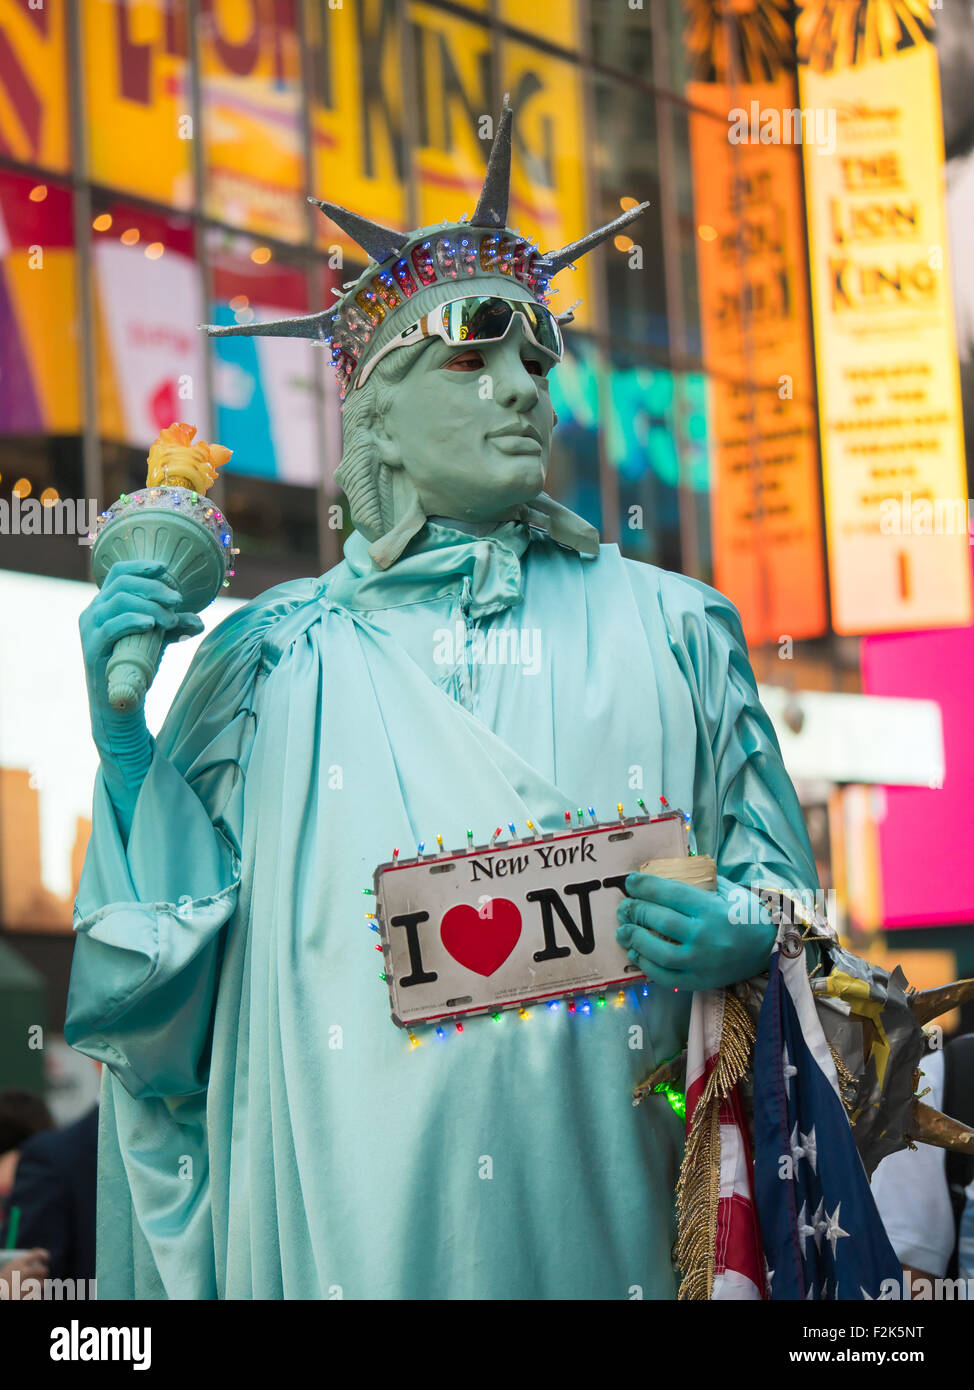 Un interprète dans un costume de la Statue de la liberté, de travaux à la recherche d'astuces pour des photos avec les touristes à Times Square à New York. Banque D'Images